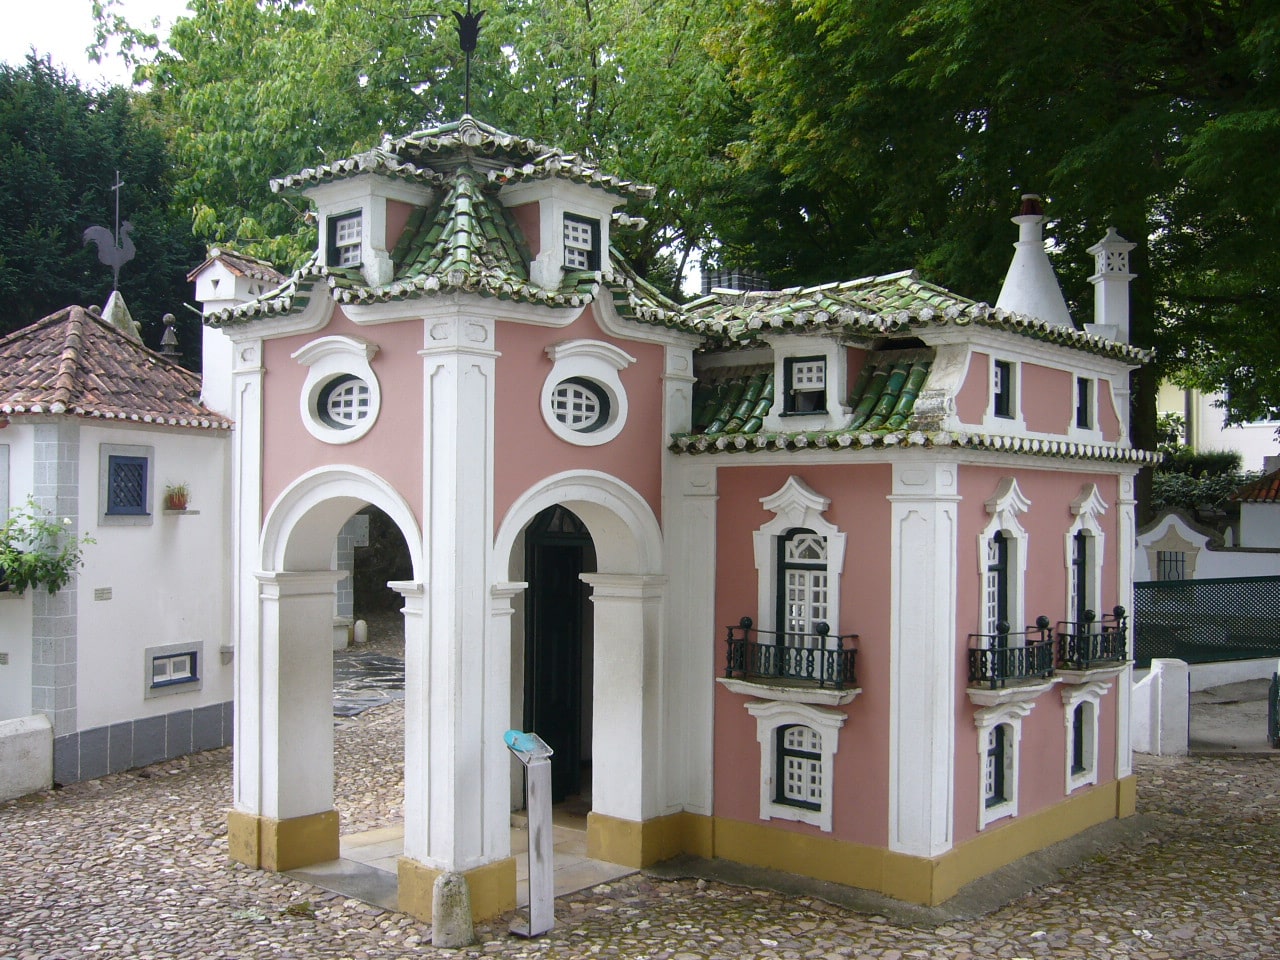 El increíble parque temático dos pequenitos de Portugal